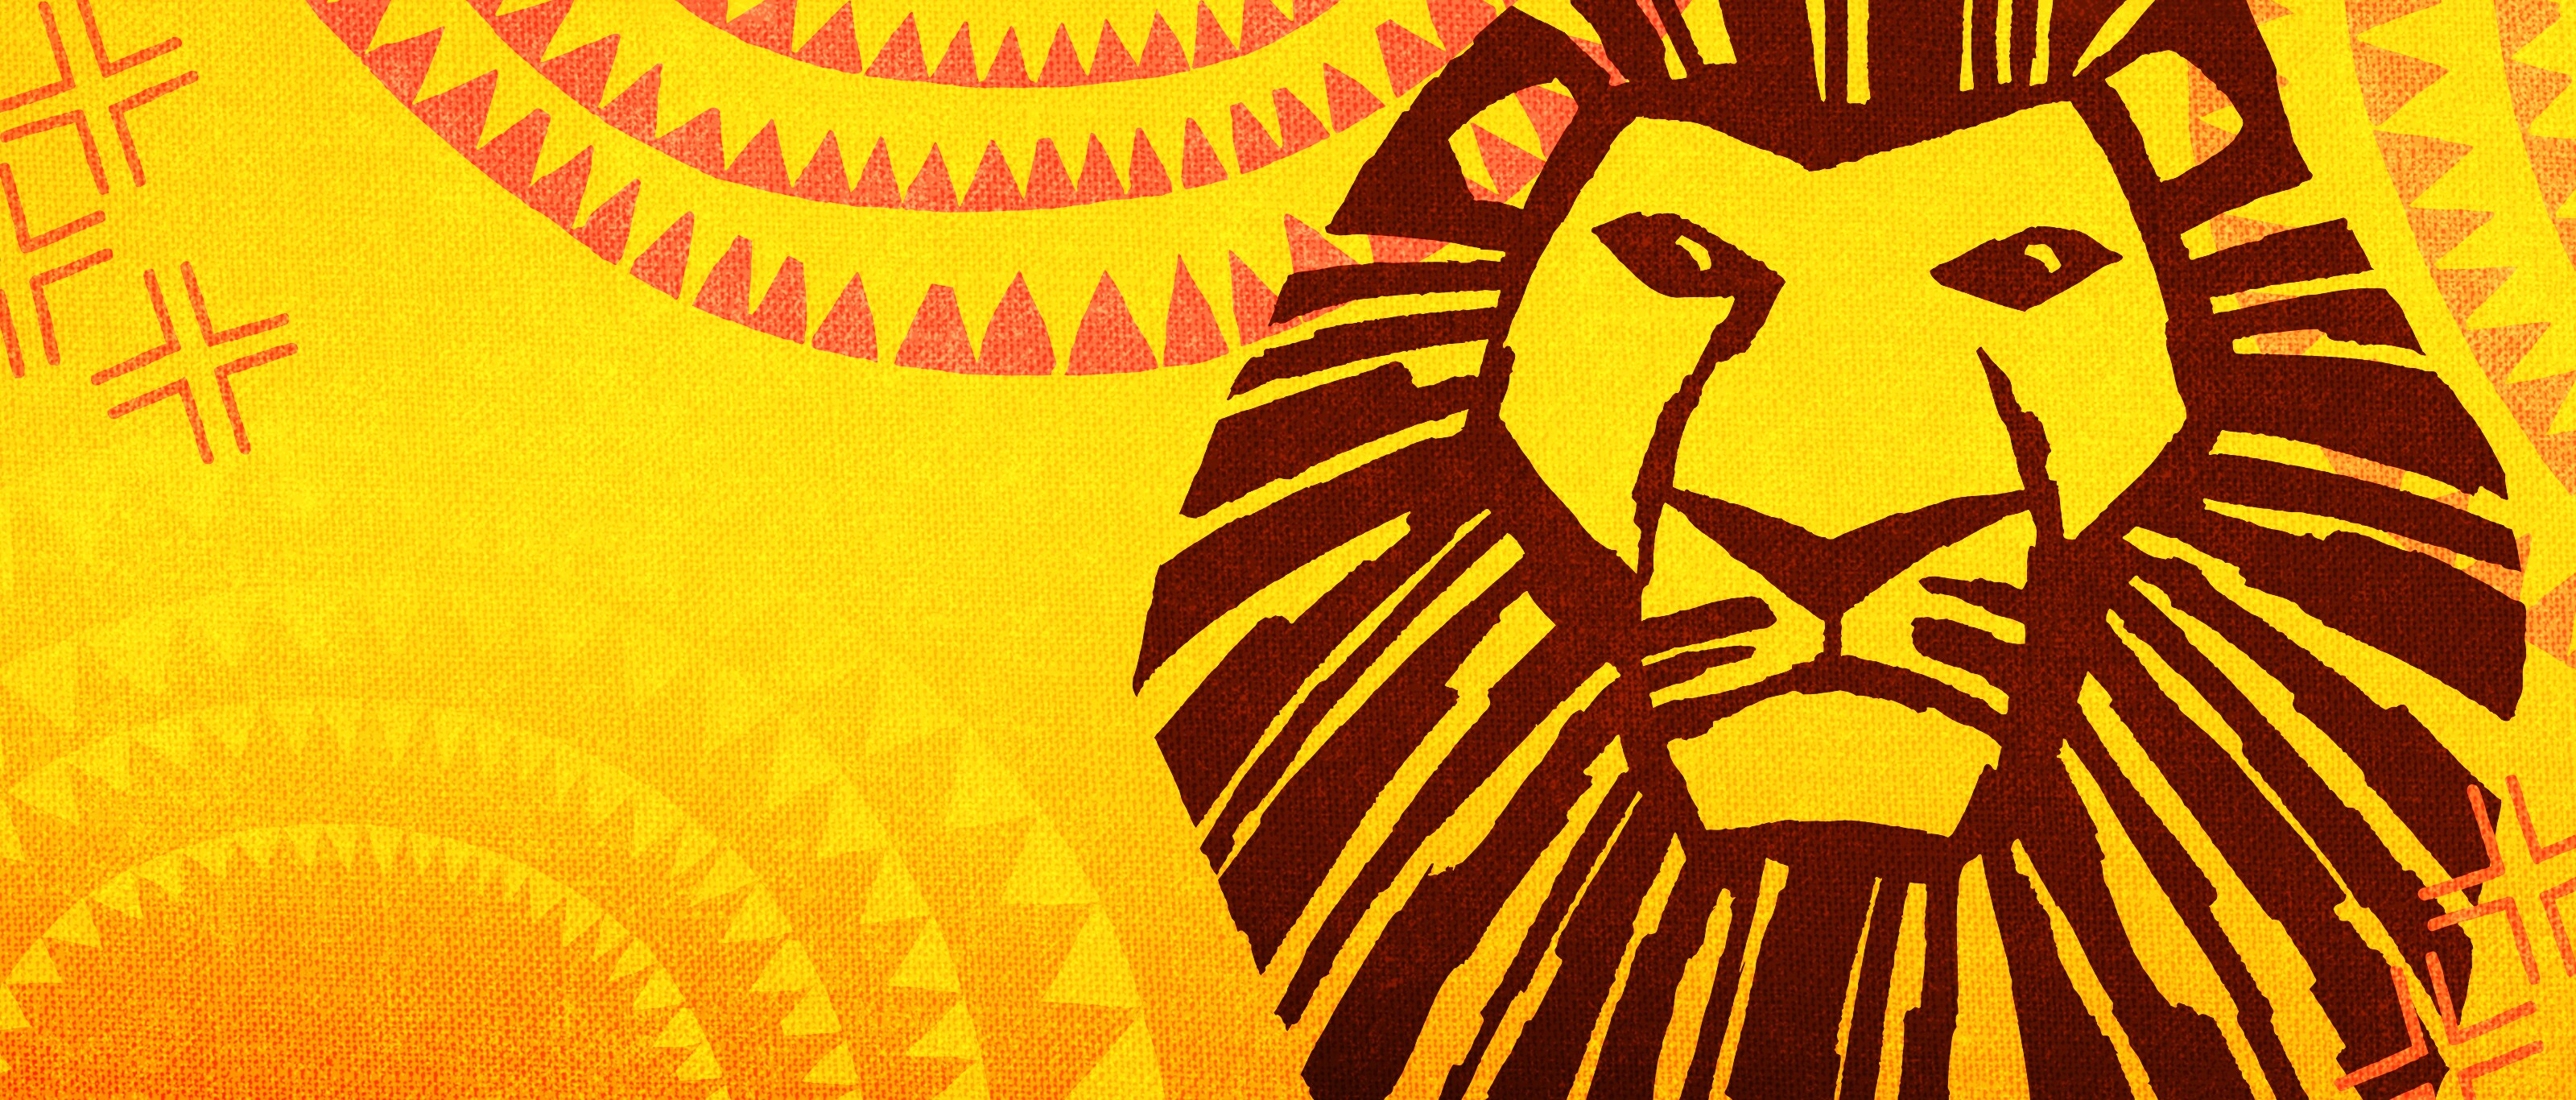 lion king musical tour 2022 uk